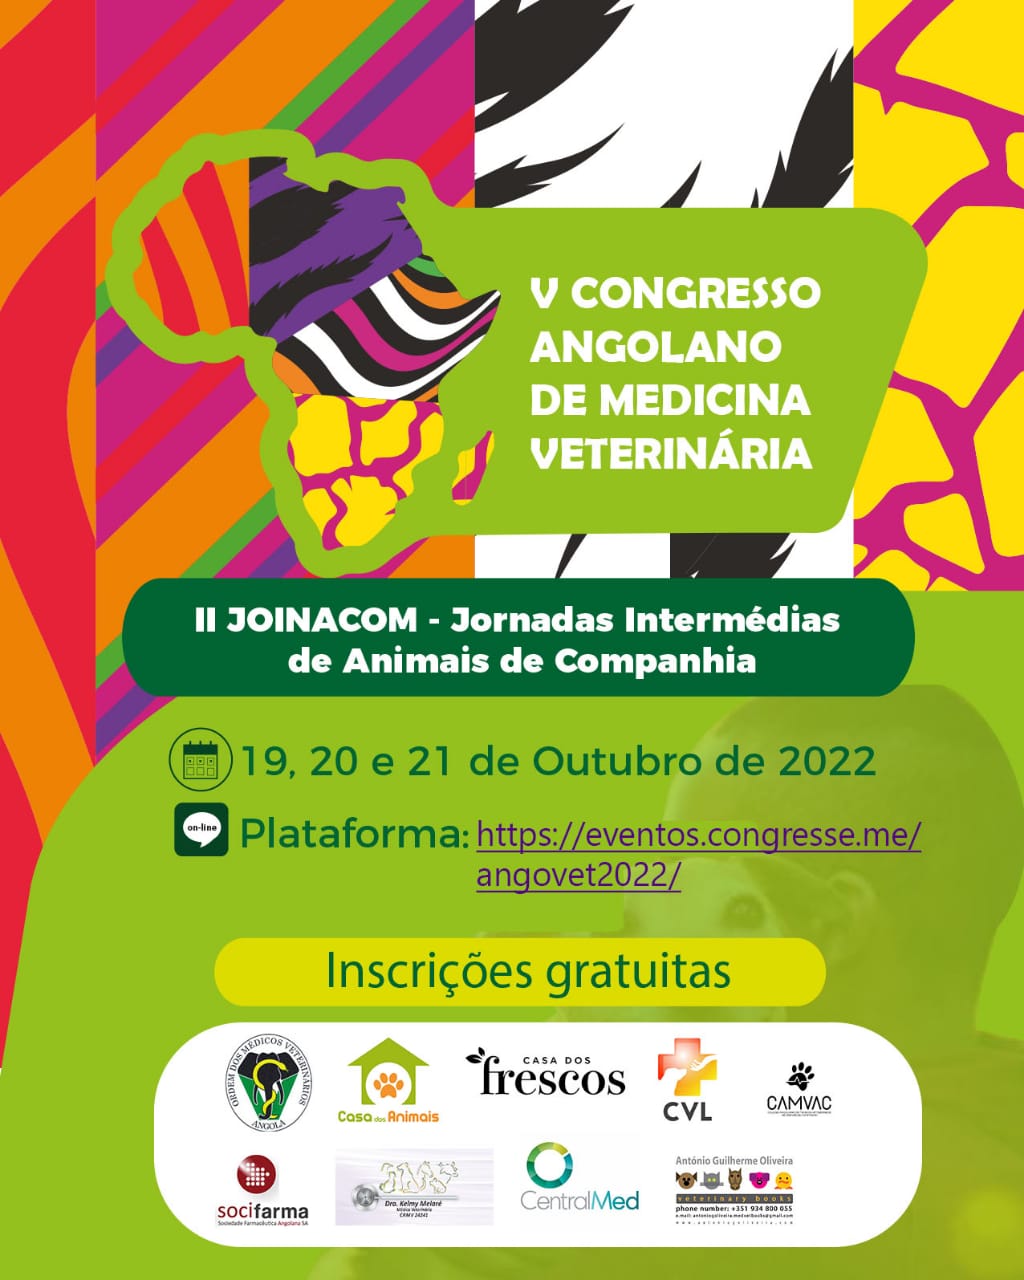 V Congresso Internacional Angolano de Medicina Veterinária